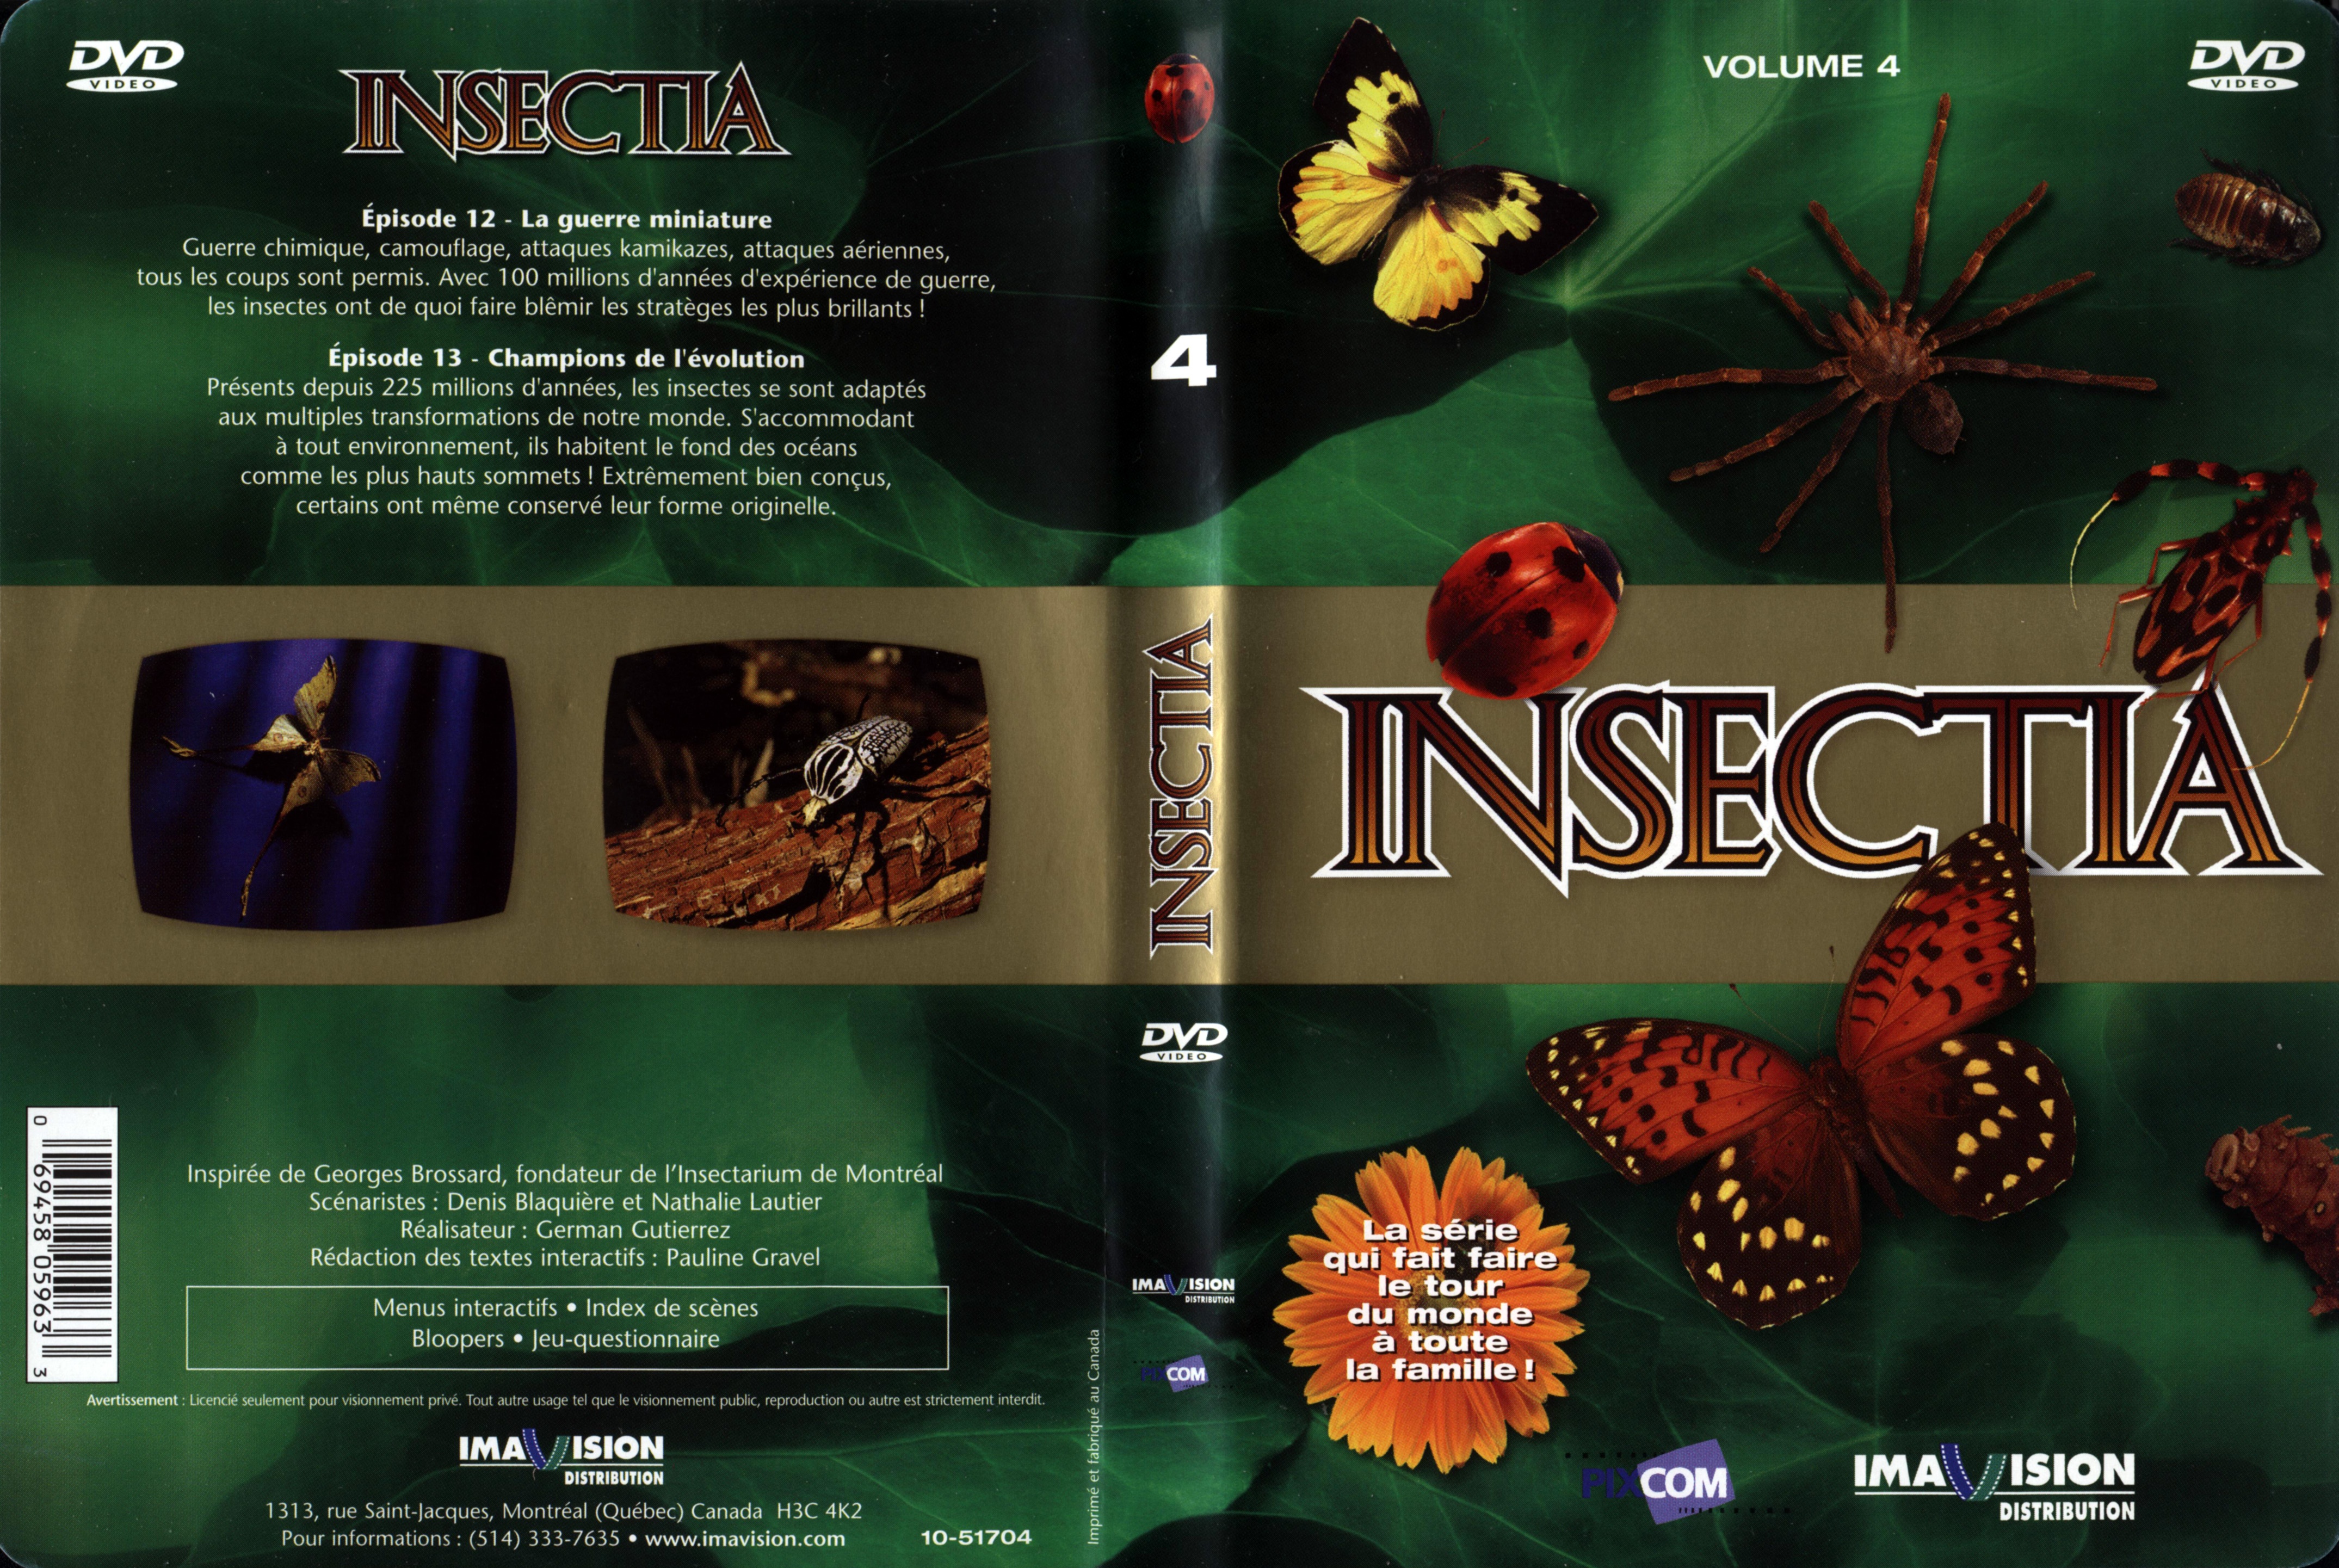 Jaquette DVD Insectia vol 4